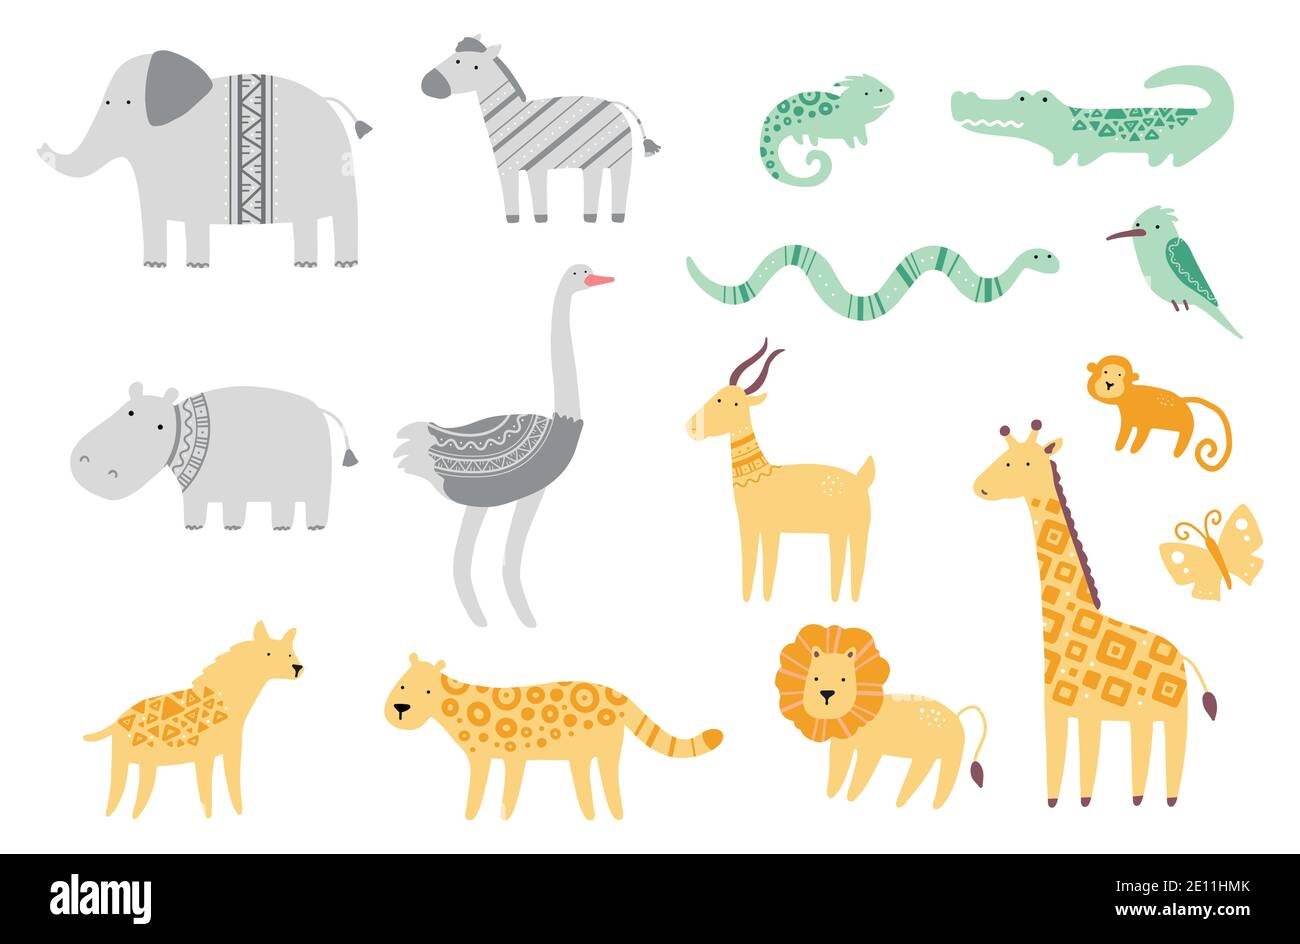 Set von niedlichen afrikanischen Zoo Tiere Giraffe, Zebra, Löwe, Vogel, Elefant, Schlange, Eidechse, Gepard, Krokodil. Flache und einfache Design-Stil für Baby, Kinder Illustration. Stock Vektor